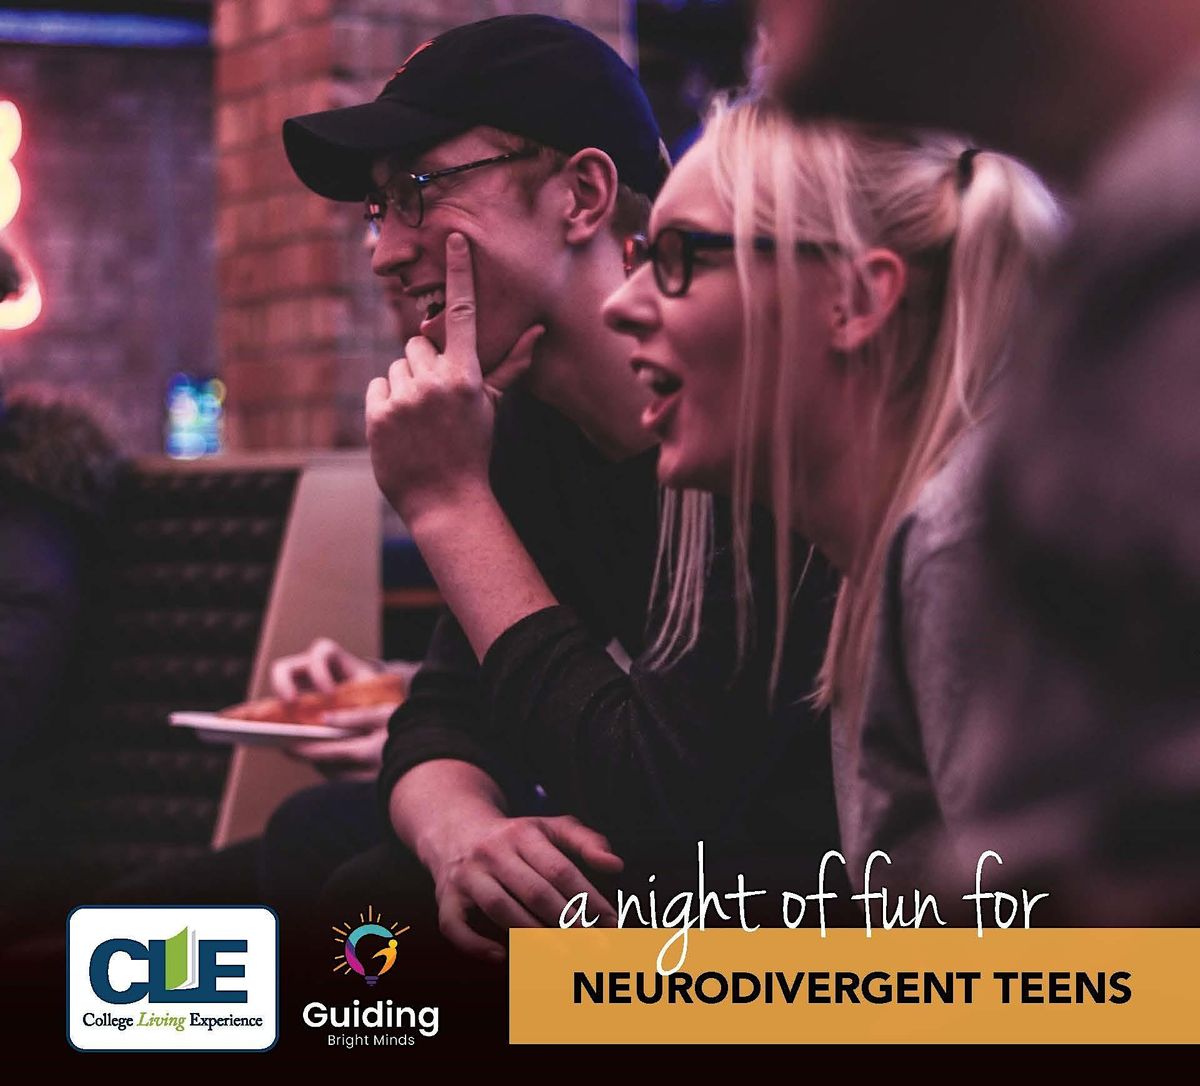 Thursday Night Fun for Neurodivergent Teens!